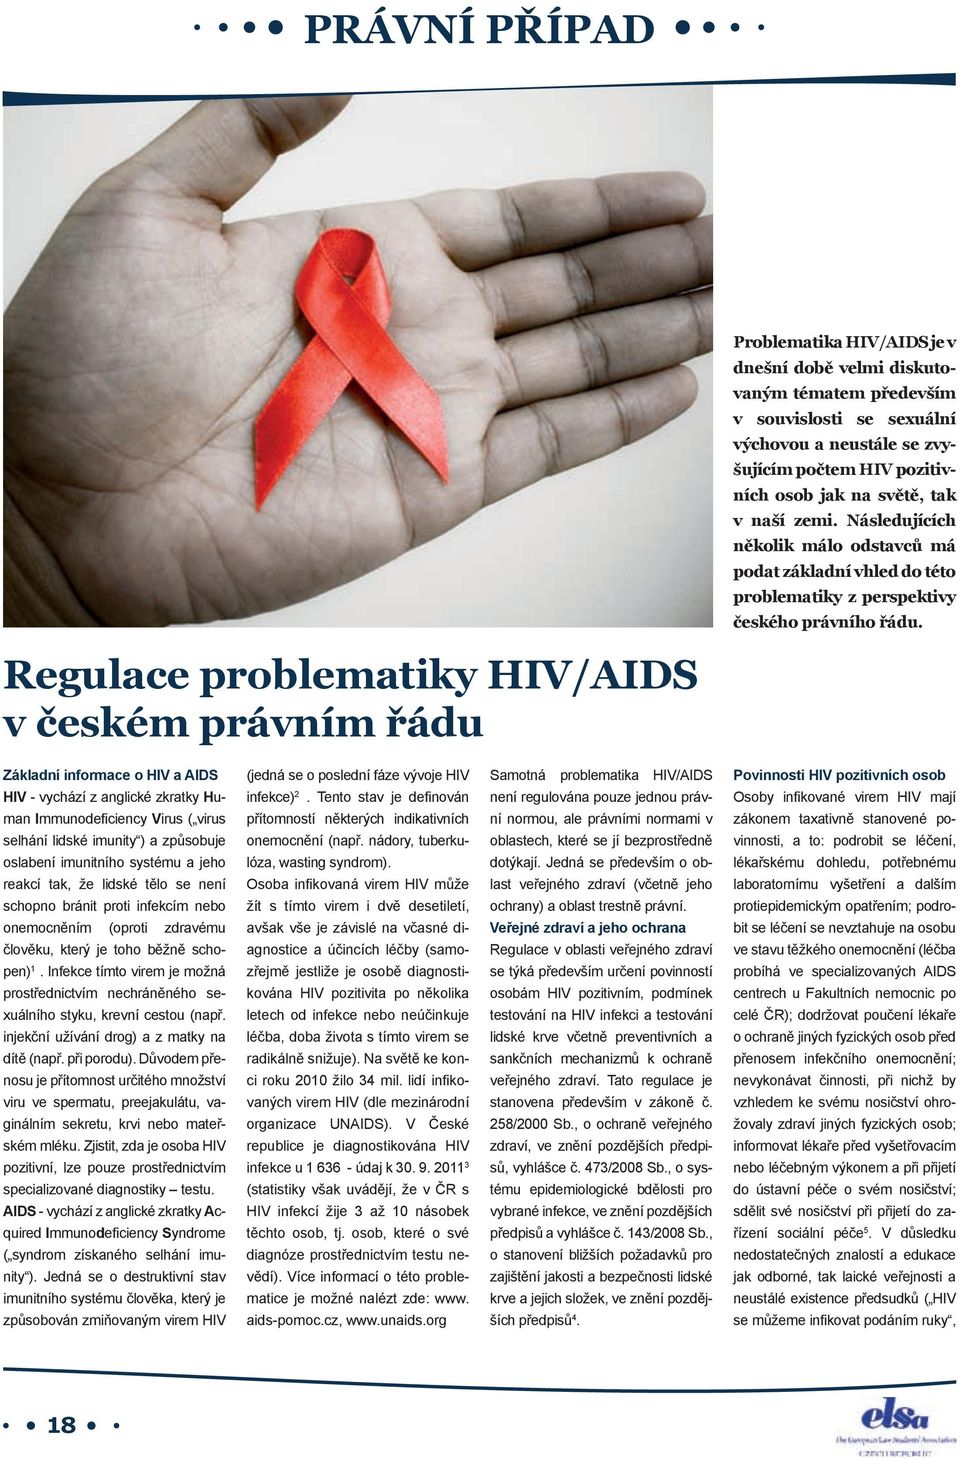 Regulace problematiky HIV/AIDS v českém právním řádu Základní informace o HIV a AIDS HIV - vychází z anglické zkratky Human Immunodeficiency Virus ( virus selhání lidské imunity ) a způsobuje